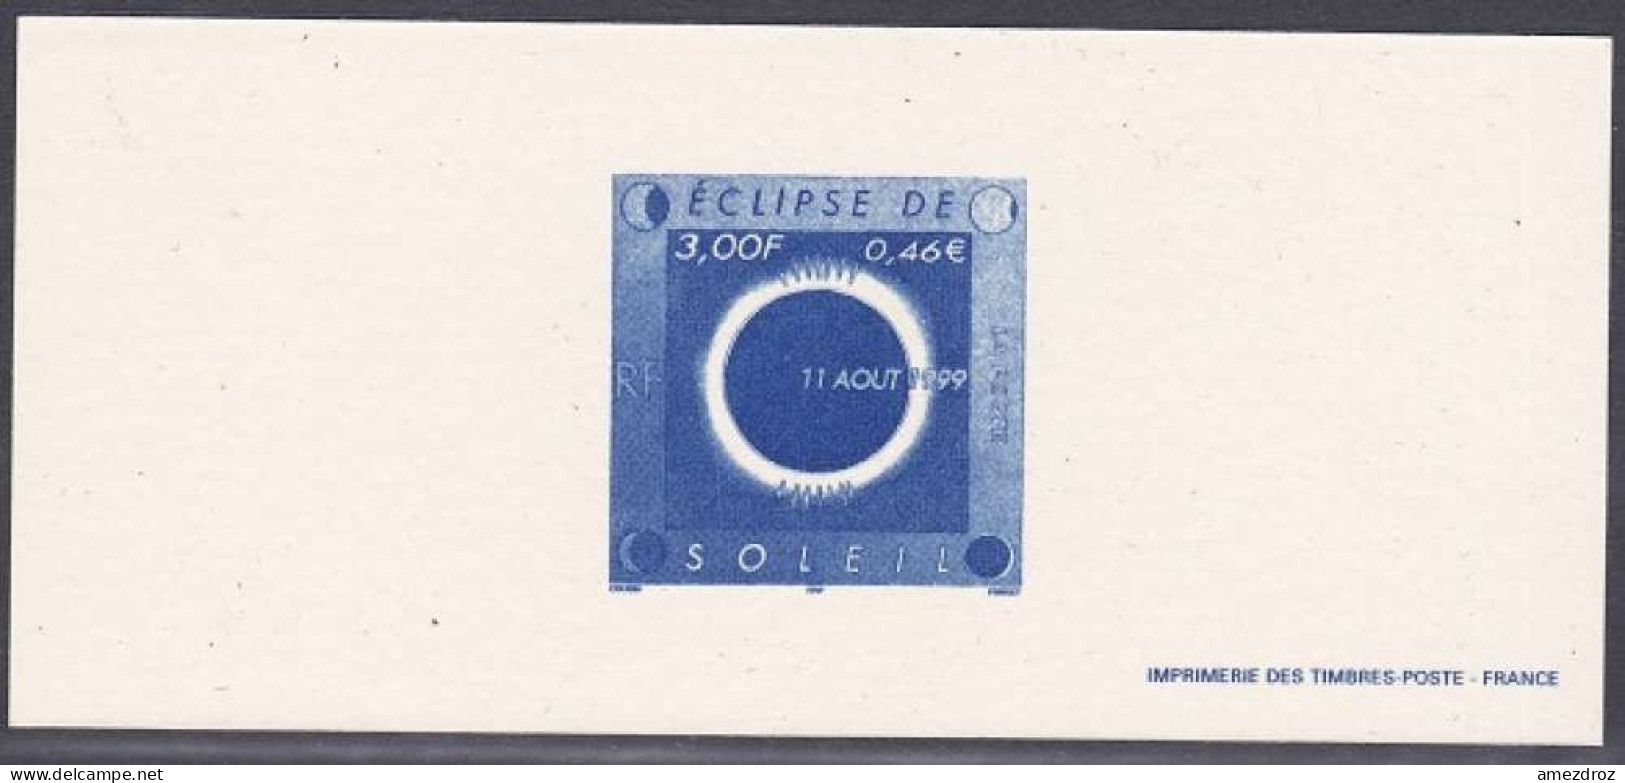 France Gravure Officielle - Eclipse De Soleil (4) - Documents Of Postal Services